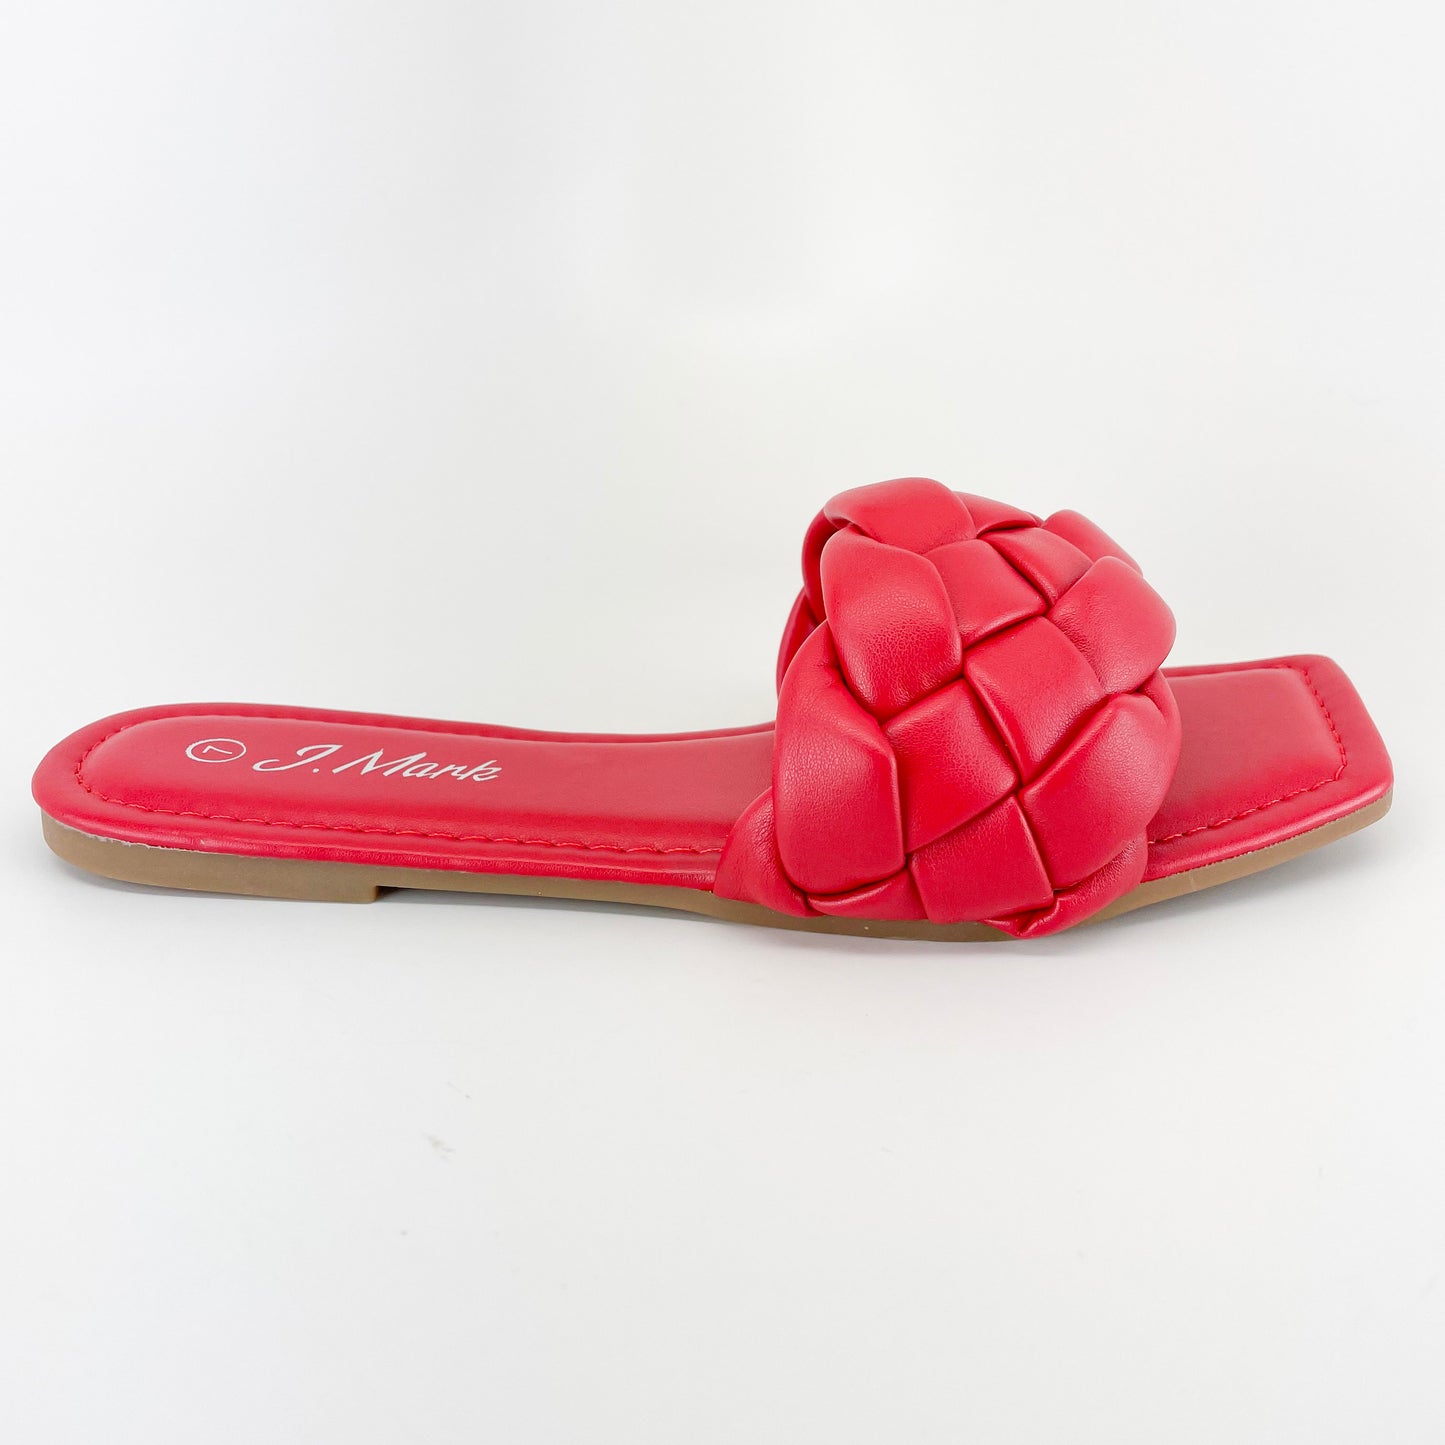 j mark passion-99 red braided slide sandal